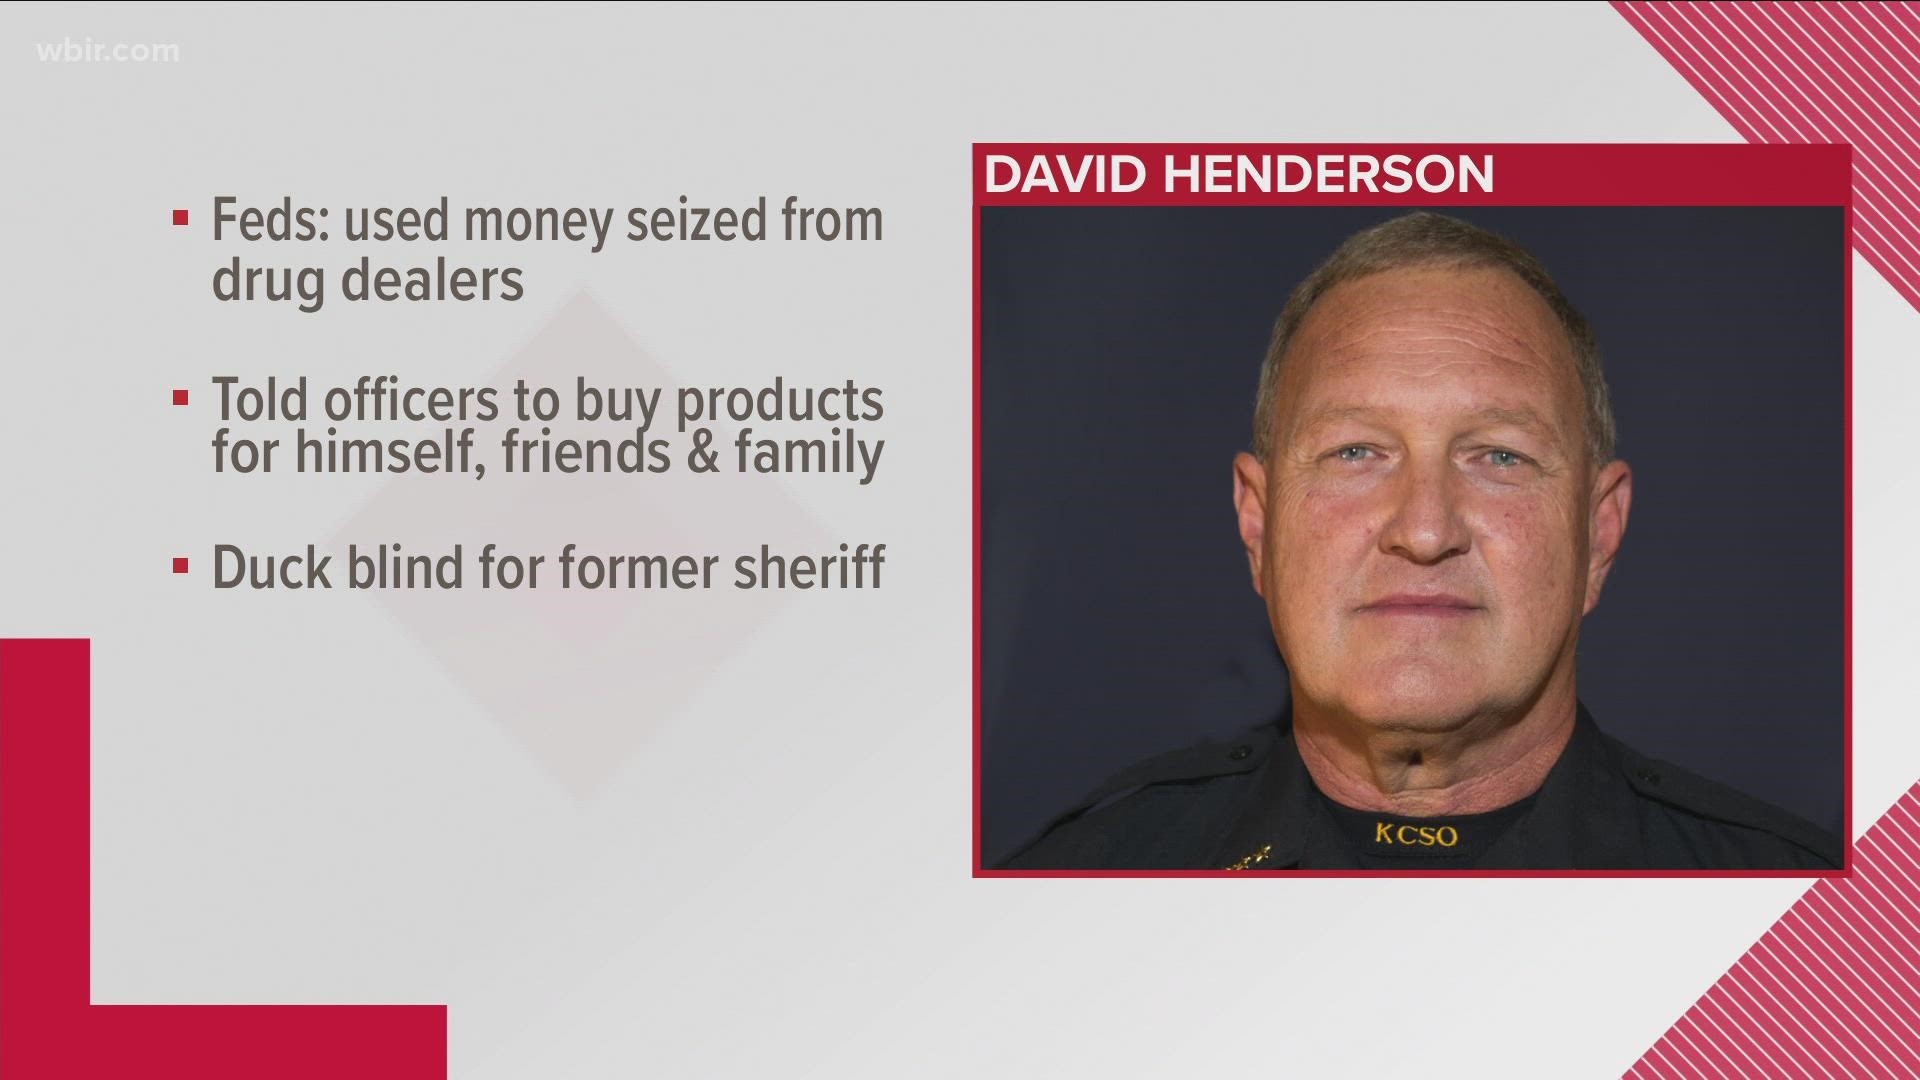 ديفيد هندرسون ، مساعد رئيس KCSO السابق ، تقاعد فجأة في أبريل 2020. يُزعم أنه استخدم أموال المخدرات لشراء أغراض شخصية.